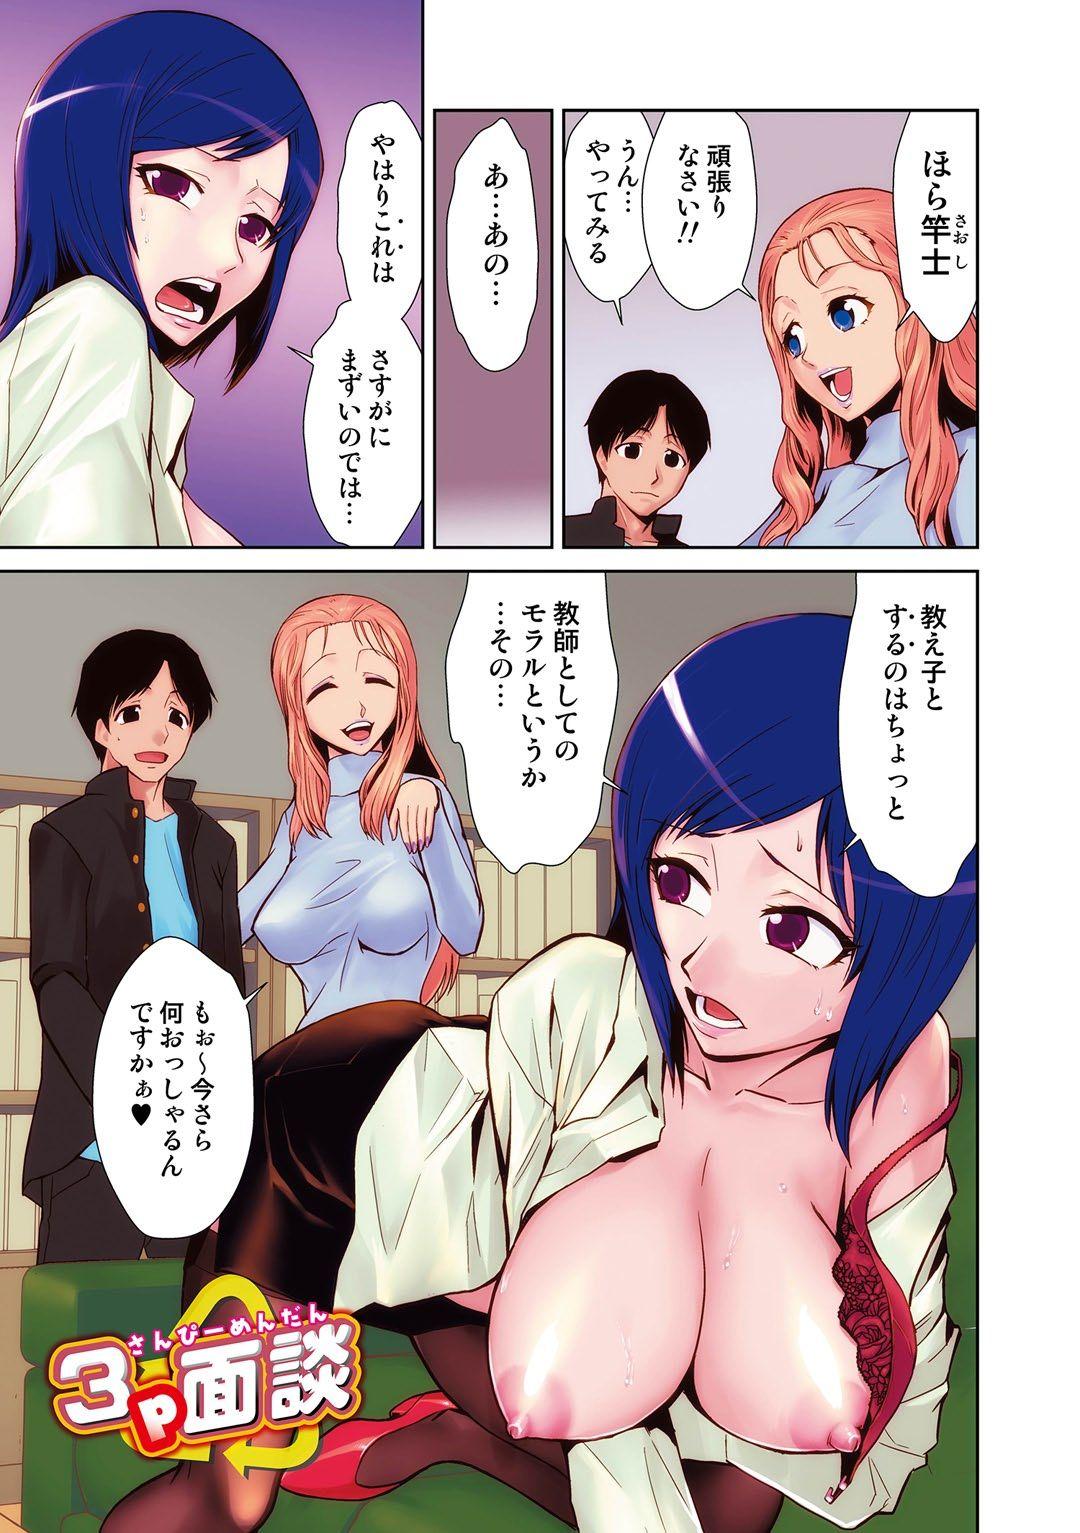 8teenxxx Do-M Kazoku Keikaku 18 Porn - Page 4